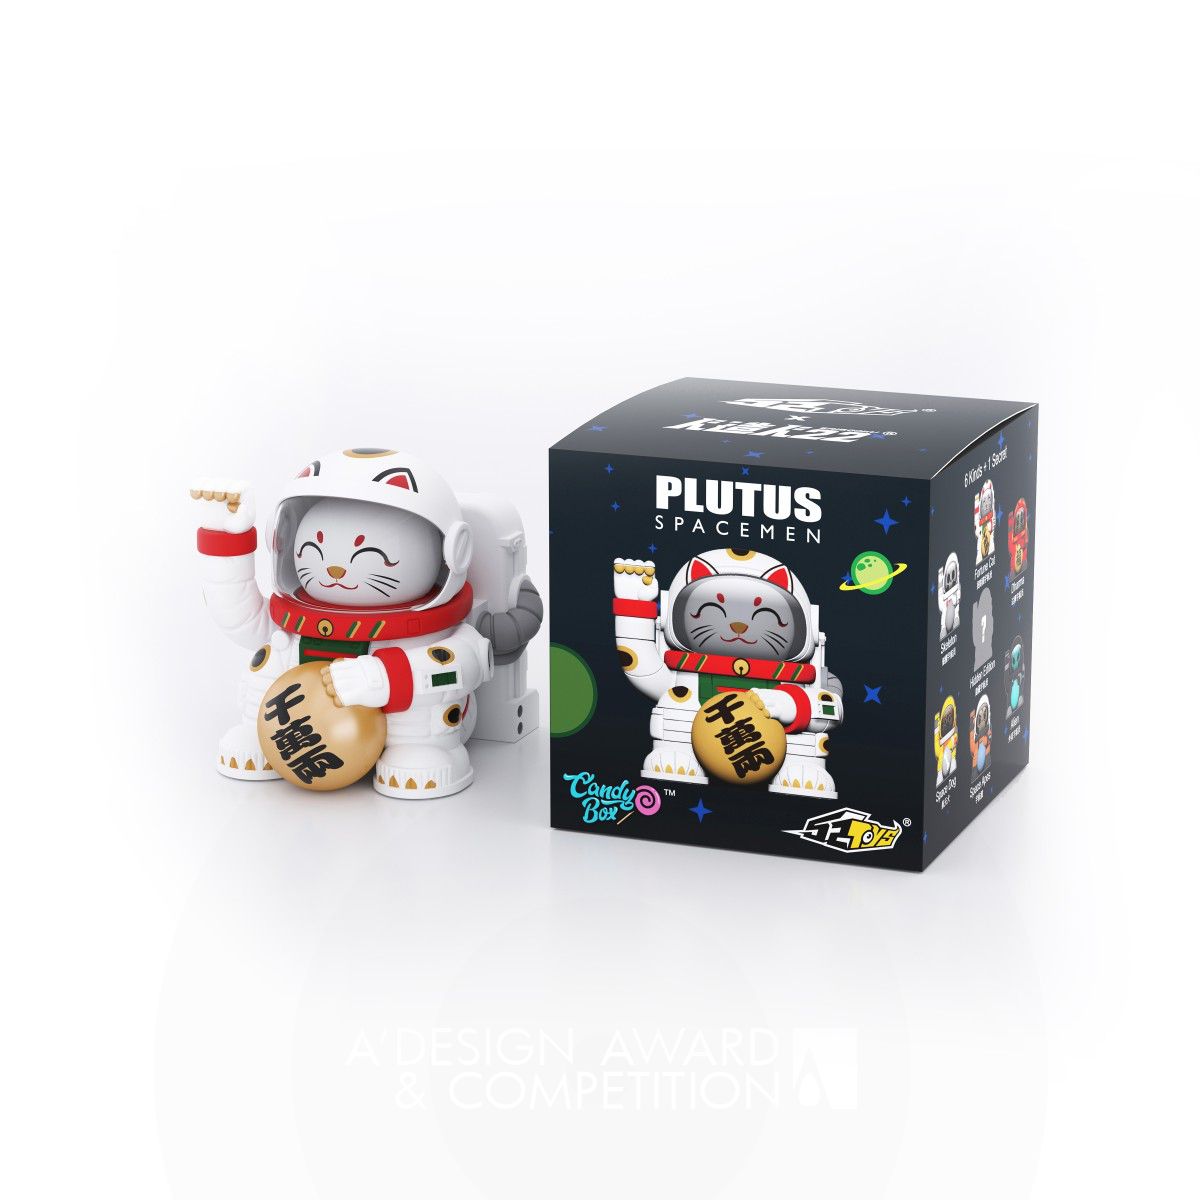 Plutus Spacemen: I giocattoli che uniscono astronauti e gatti della fortuna